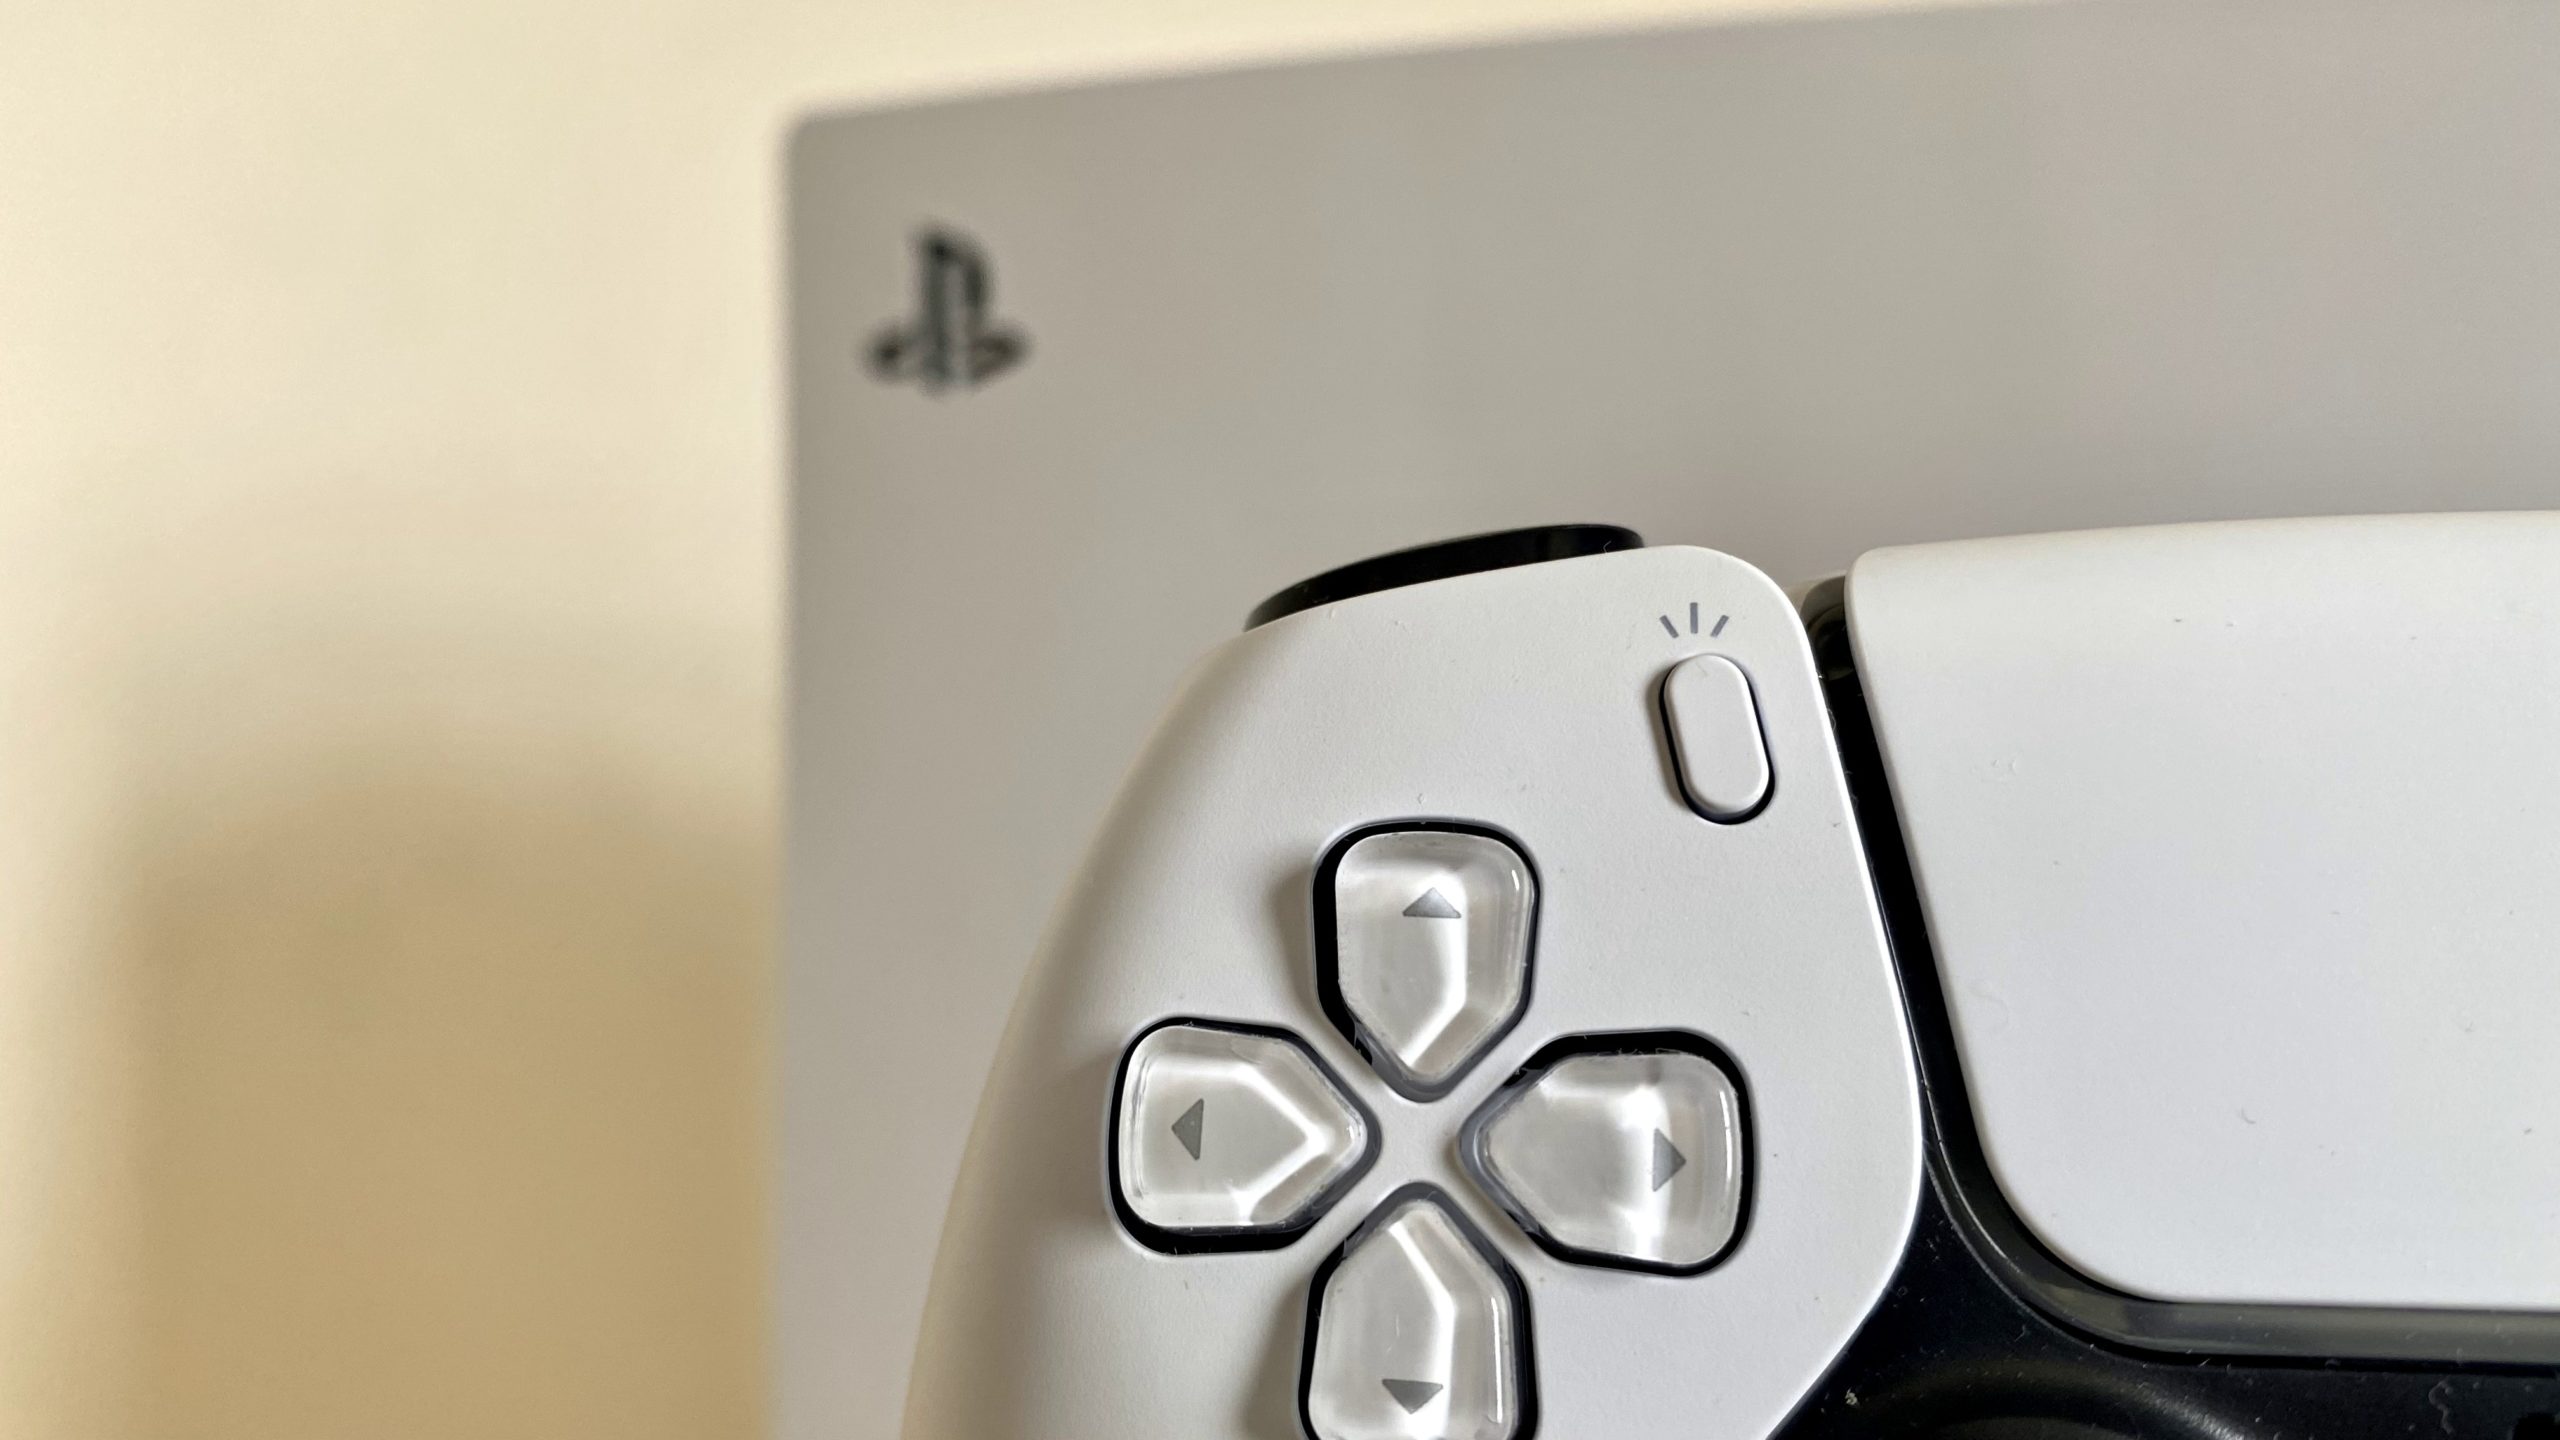 Sony defende o aumento de preços do Playstation Plus e não deve oferecer  títulos no lançamento 